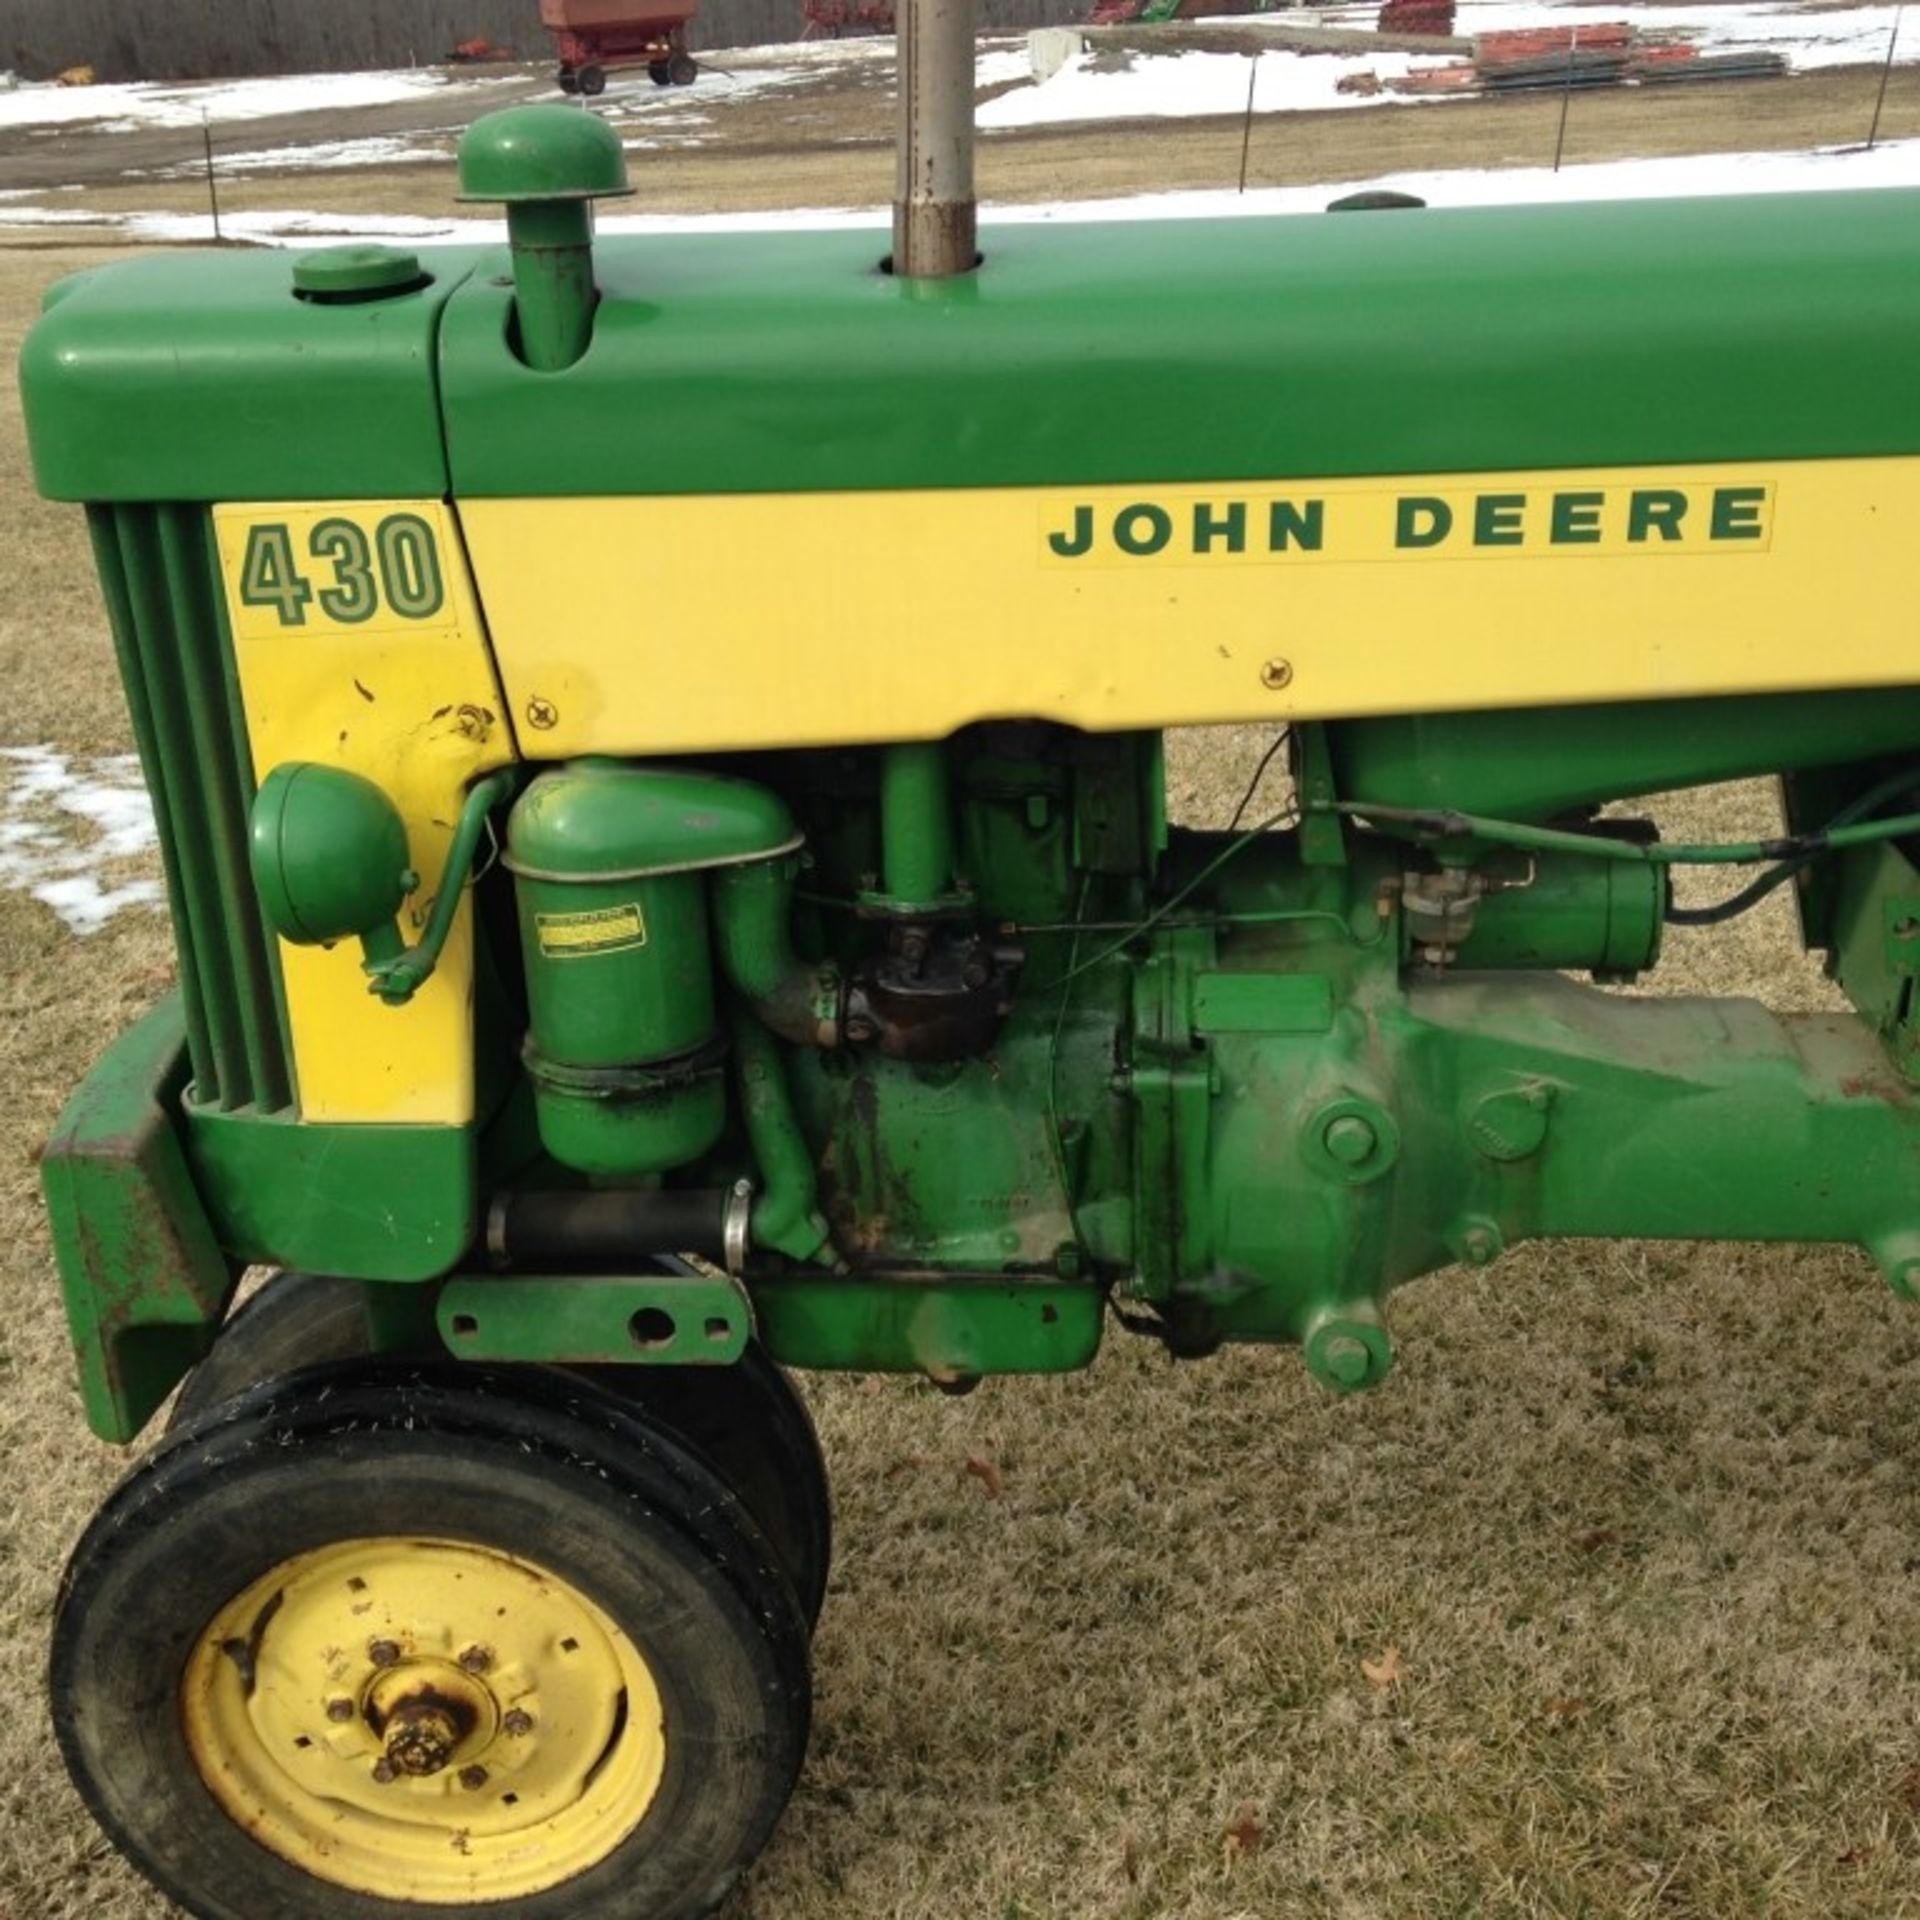 John Deere 430T Tractor - Image 8 of 11